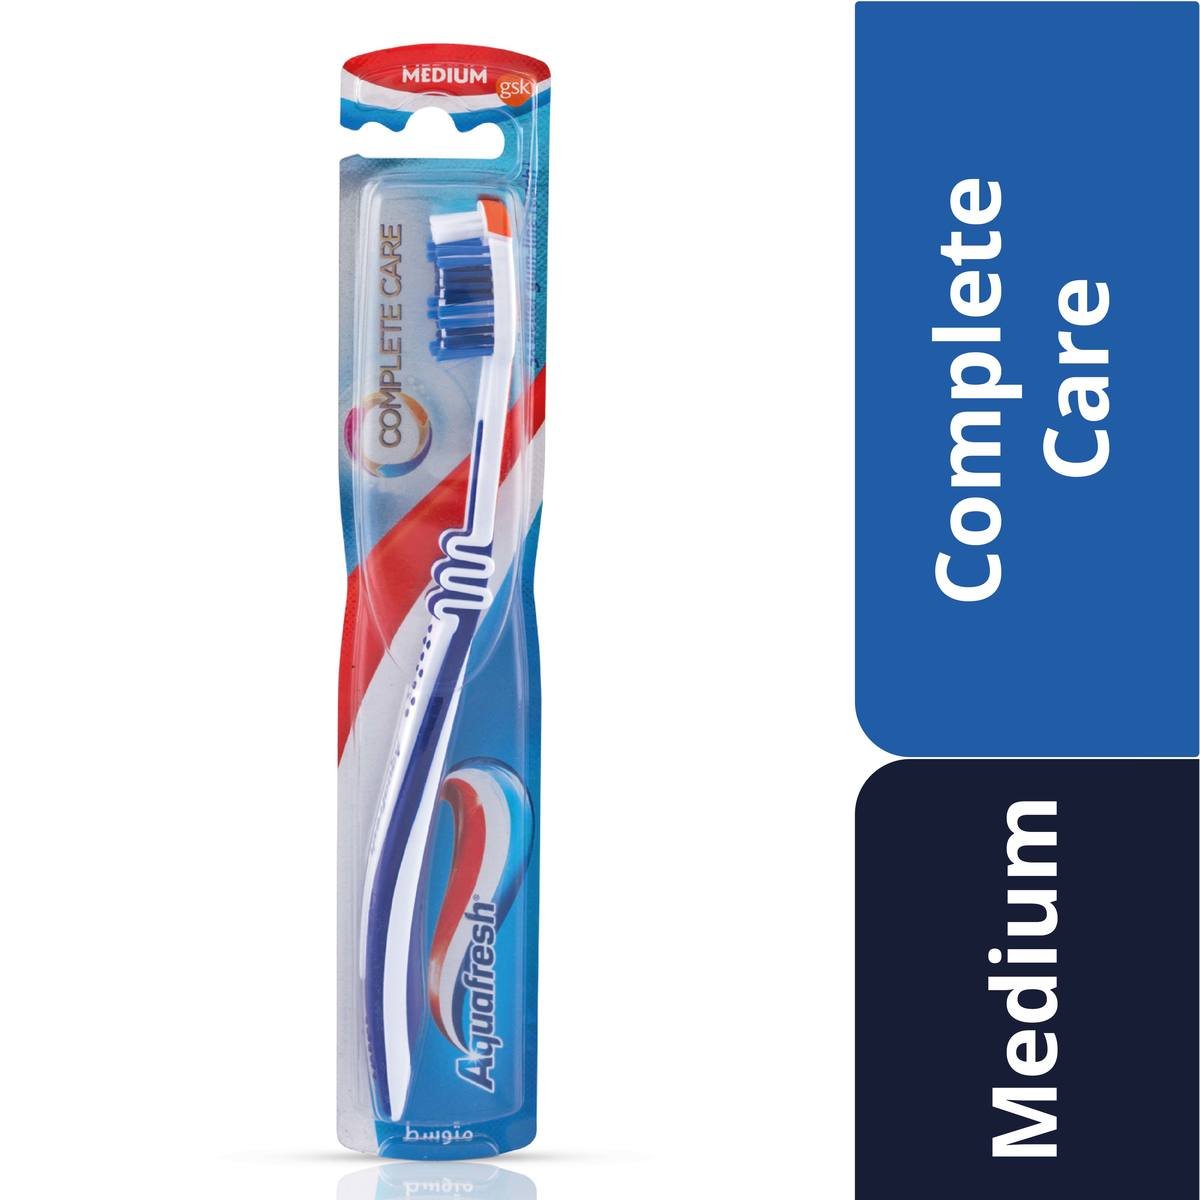 Aquafresh Complete Care Toothbrush Medium Assorted Color 1 pc